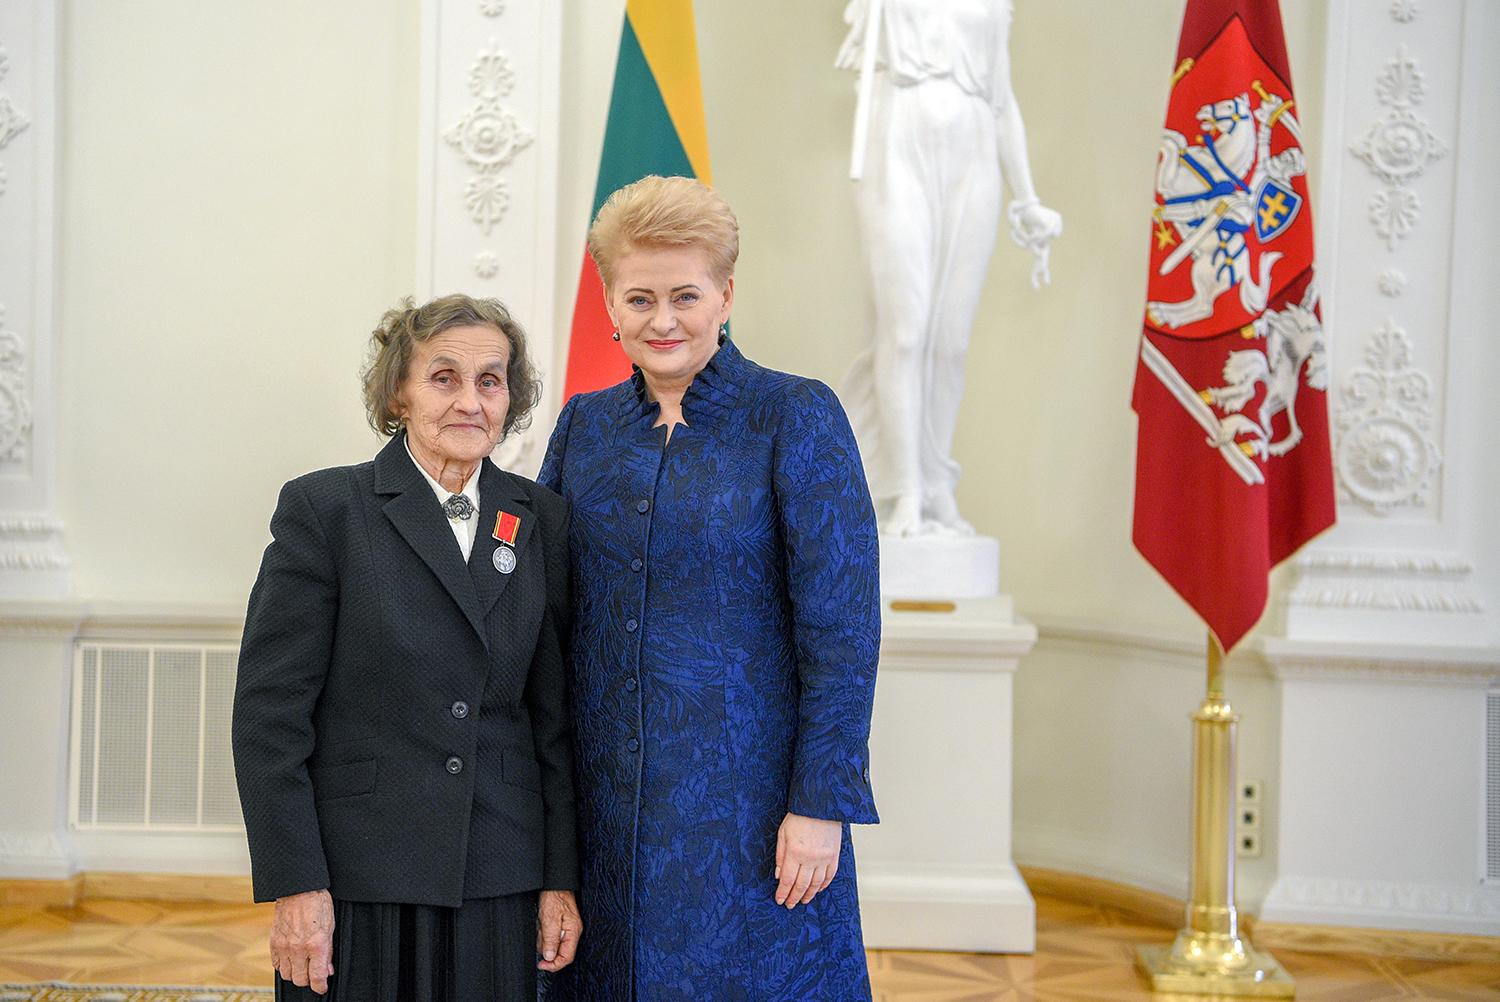 Motinišką meilę atidavė penkioms dukroms / Šalies Prezidentė Dalia Grybauskaitė apdovanojo ukmergiškę V. Kadelskienę. Roberto Dačkaus nuotr.